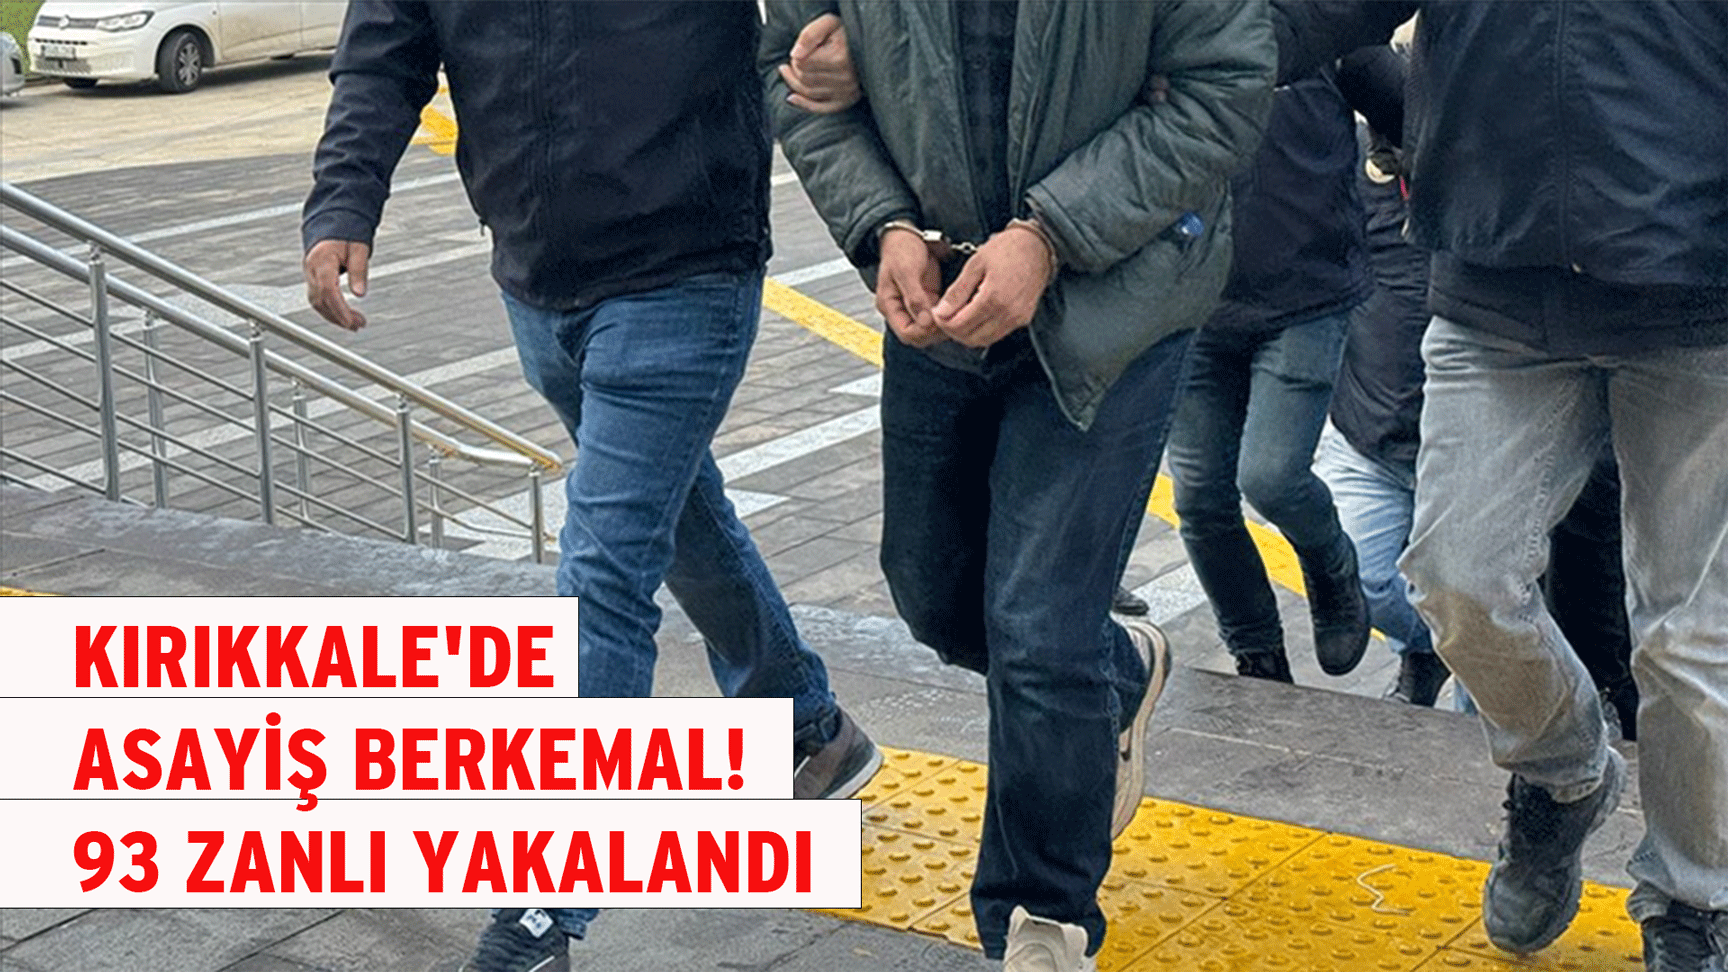 Kırıkkale'de asayiş berkemal! 93 zanlı yakalandı